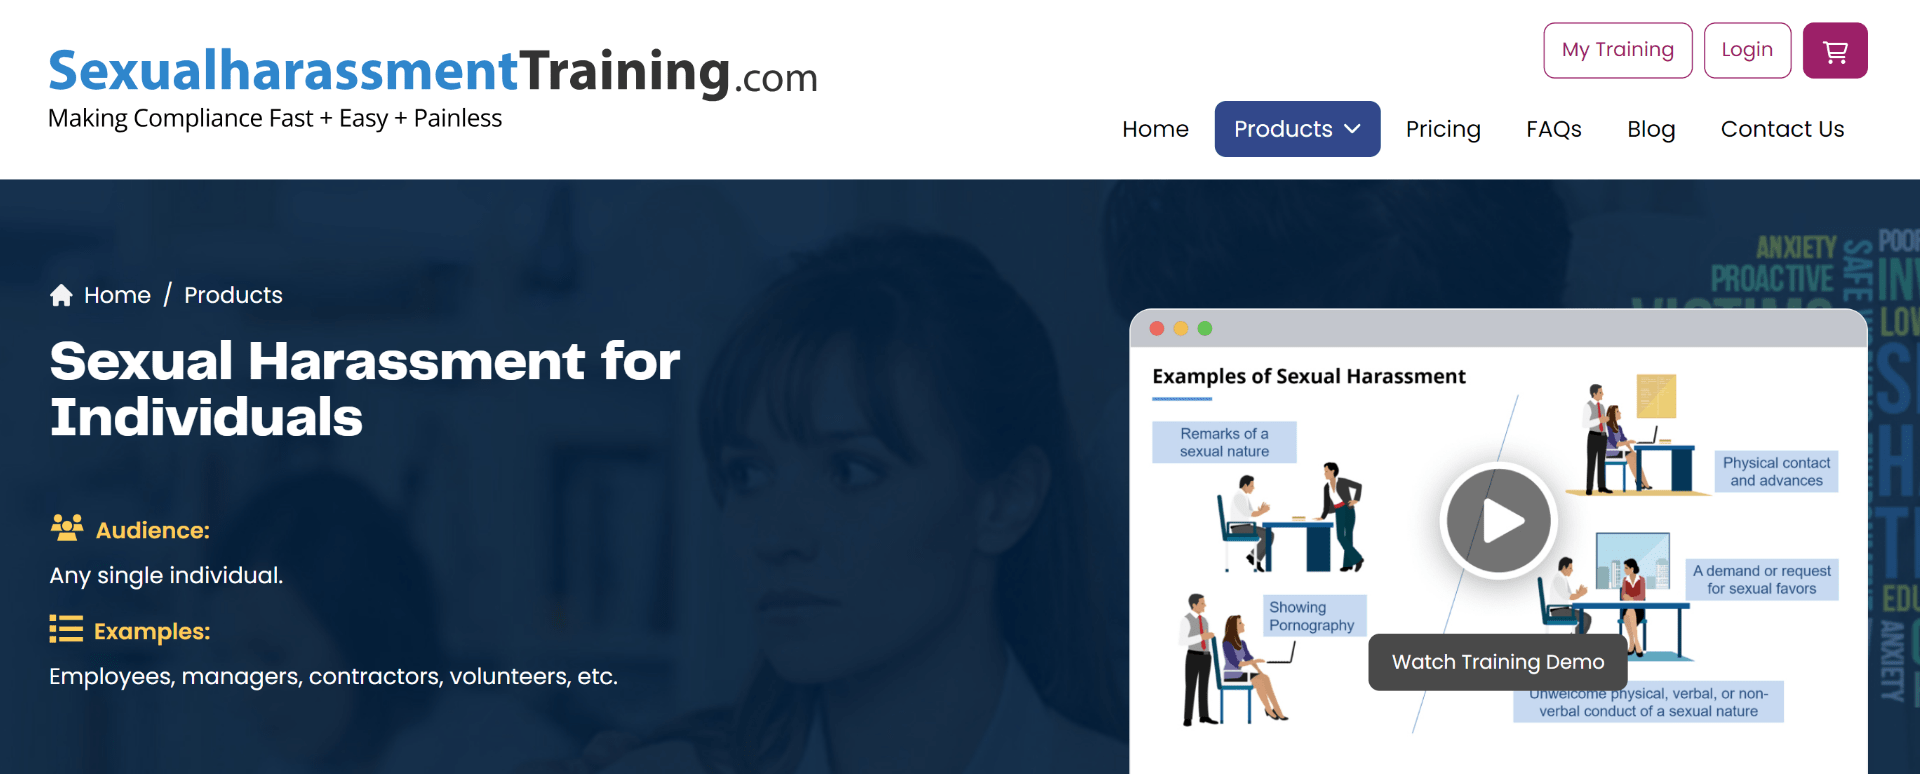 SexualharassmentTraining.com